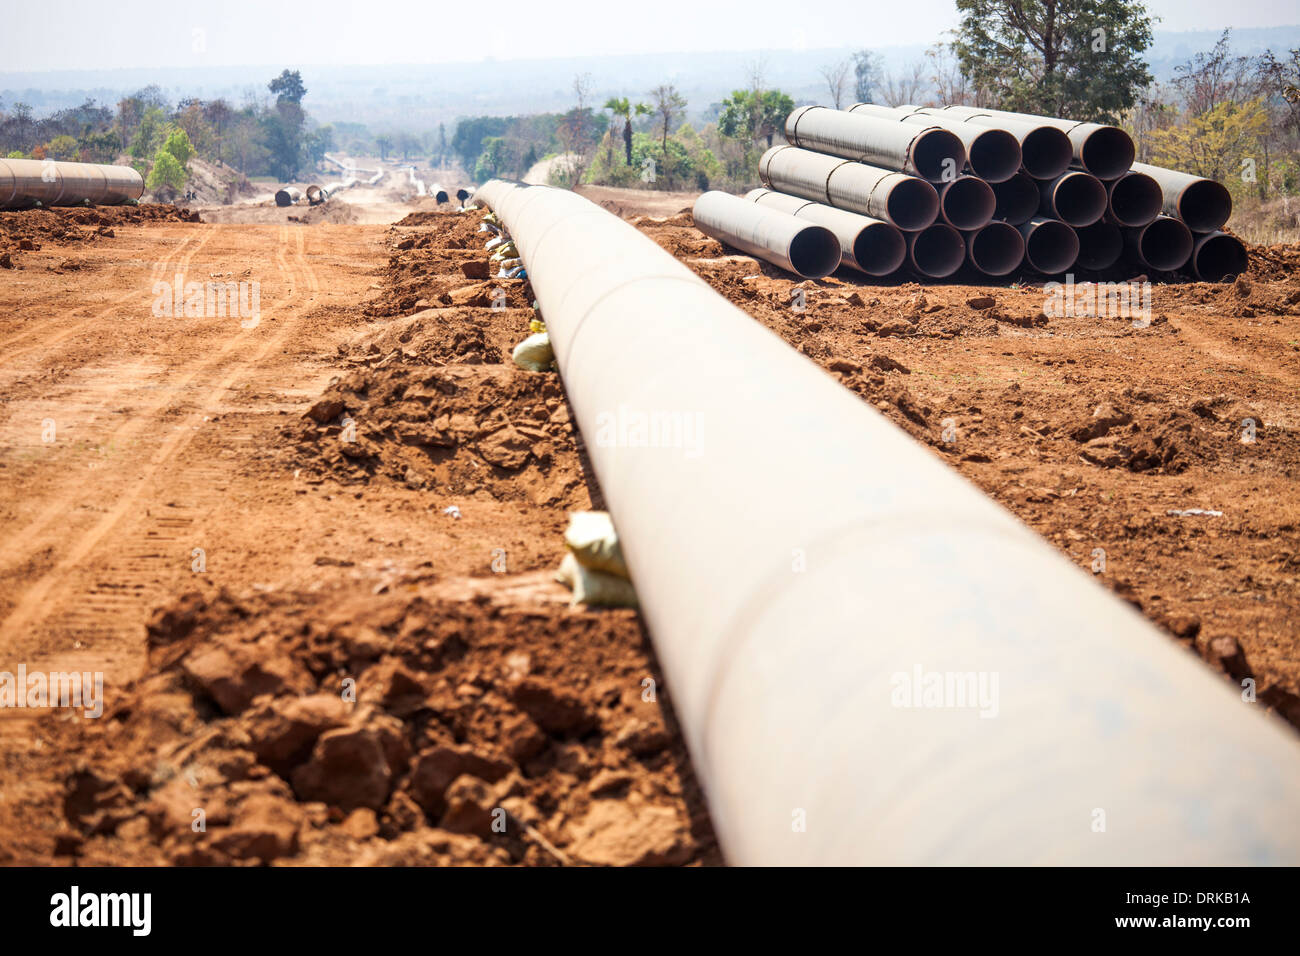 Sino-Burma pipelines de gaz naturel et de pétrole en Birmanie Birmanie reliant les ports en eau profonde et Kunming, Chine Banque D'Images